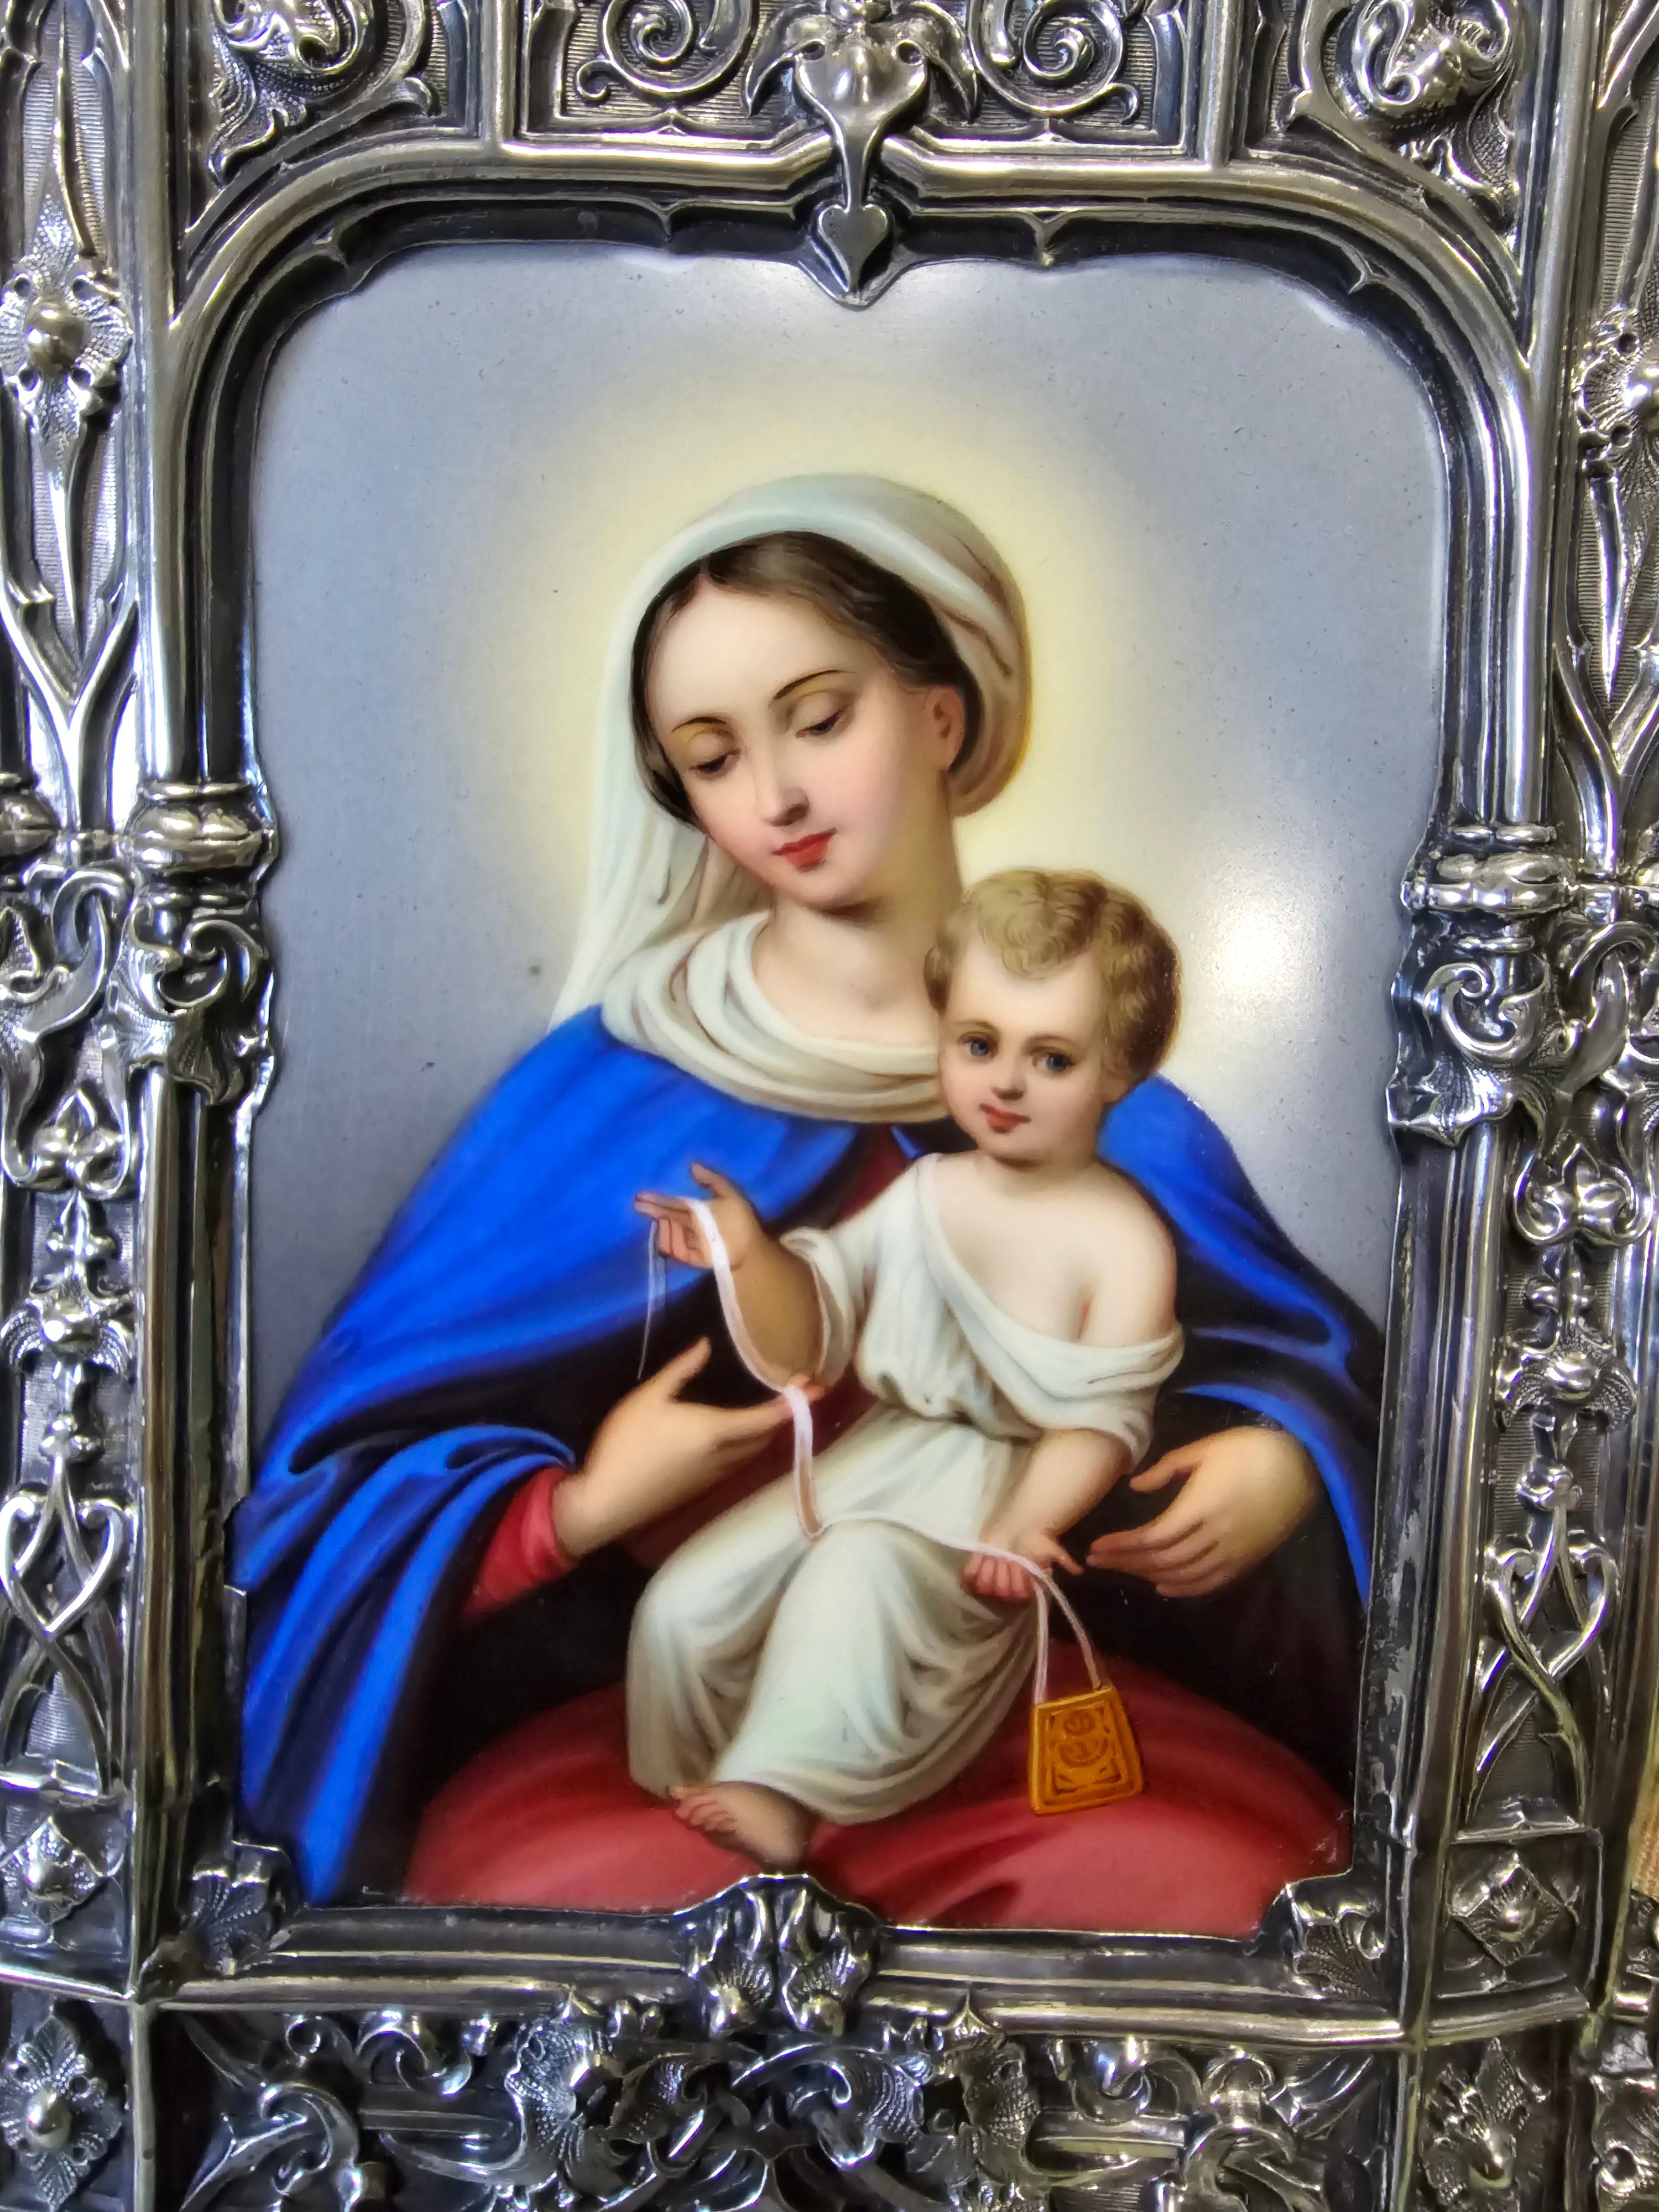 Entdecken Sie diese prächtige Andachtstafel mit der Darstellung der Jungfrau Maria und des Jesuskindes, die mit einer bemerkenswerten Emaillierung versehen und in einen Silberrahmen eingefasst ist. Dieses Werk von großer künstlerischer Finesse